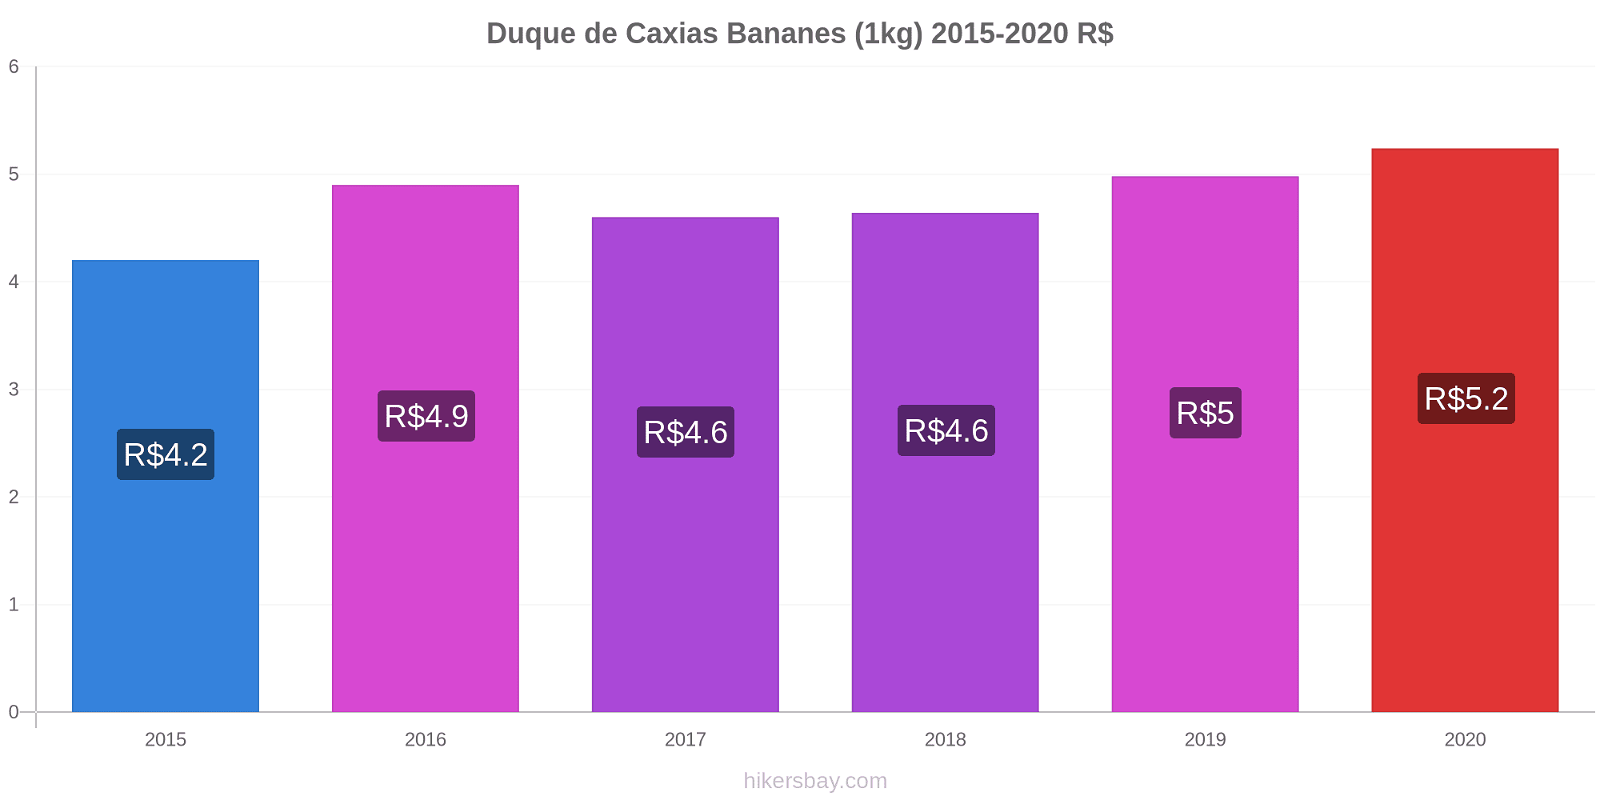 Duque de Caxias changements de prix Bananes (1kg) hikersbay.com